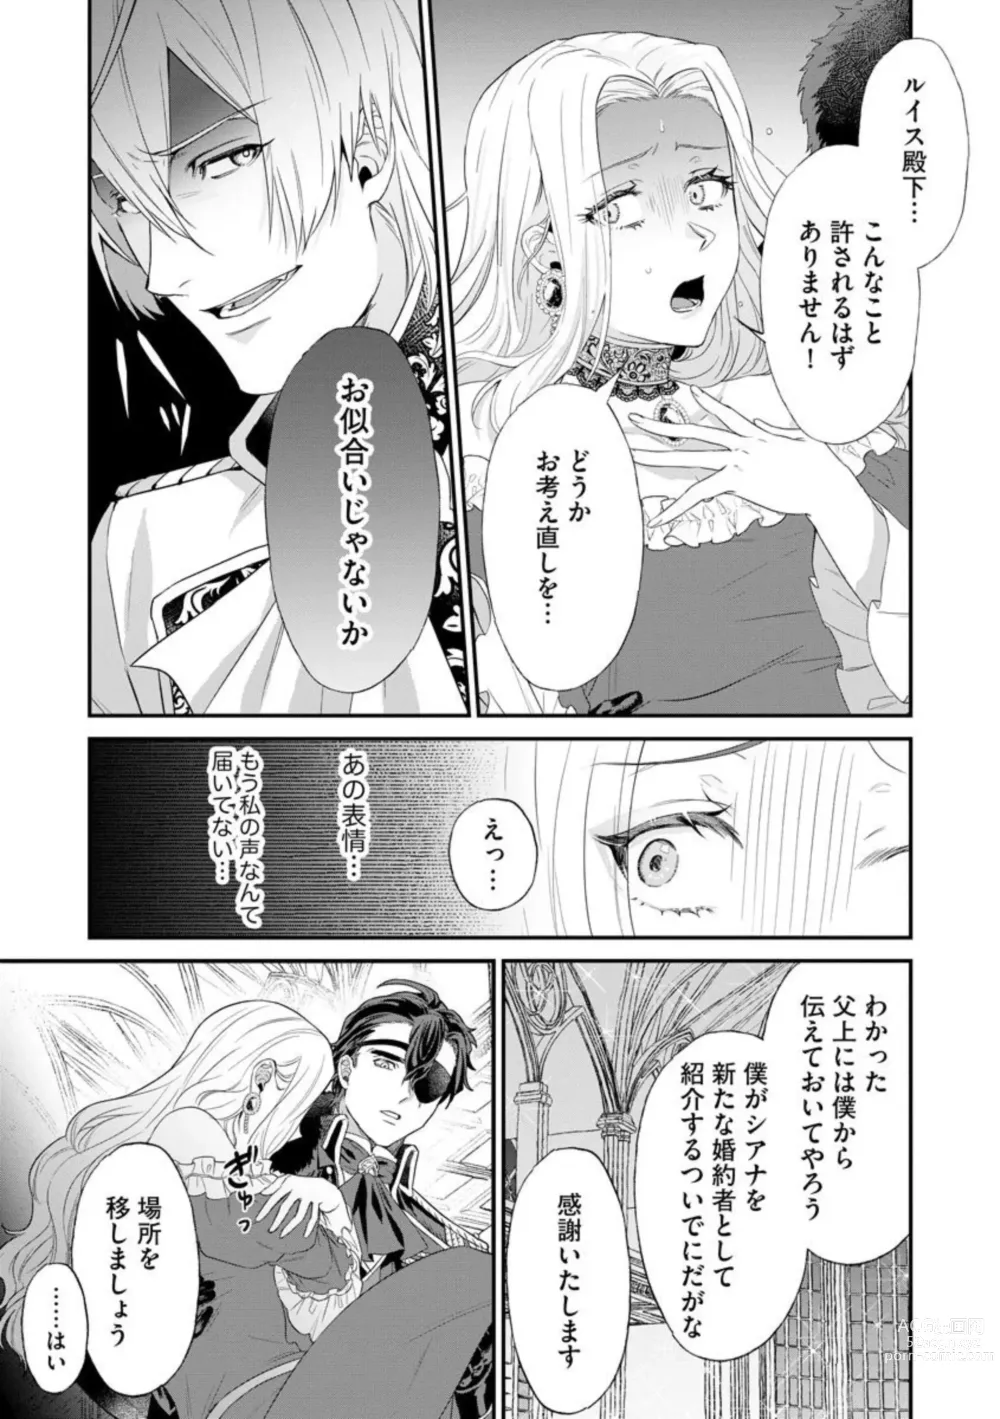 Page 21 of manga Kaibutsu Hakushaku no Amai Hana Akuyaku Reijou wa Bed de Midare Chiru 1